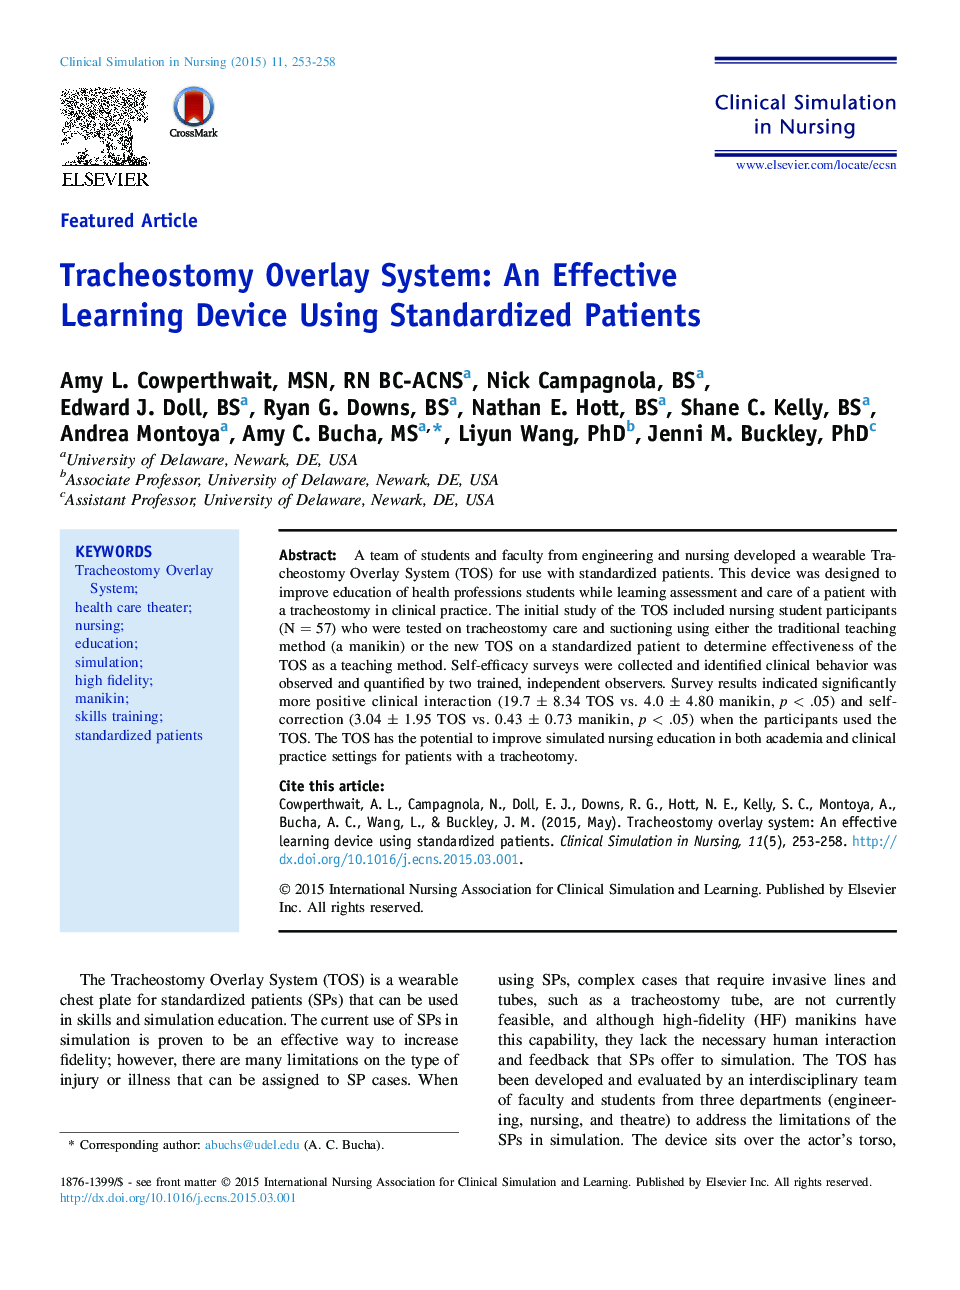 سیستم روکش تراکئوستومی: یک دستگاه یادگیری موثر با استفاده از بیماران استاندارد شده 